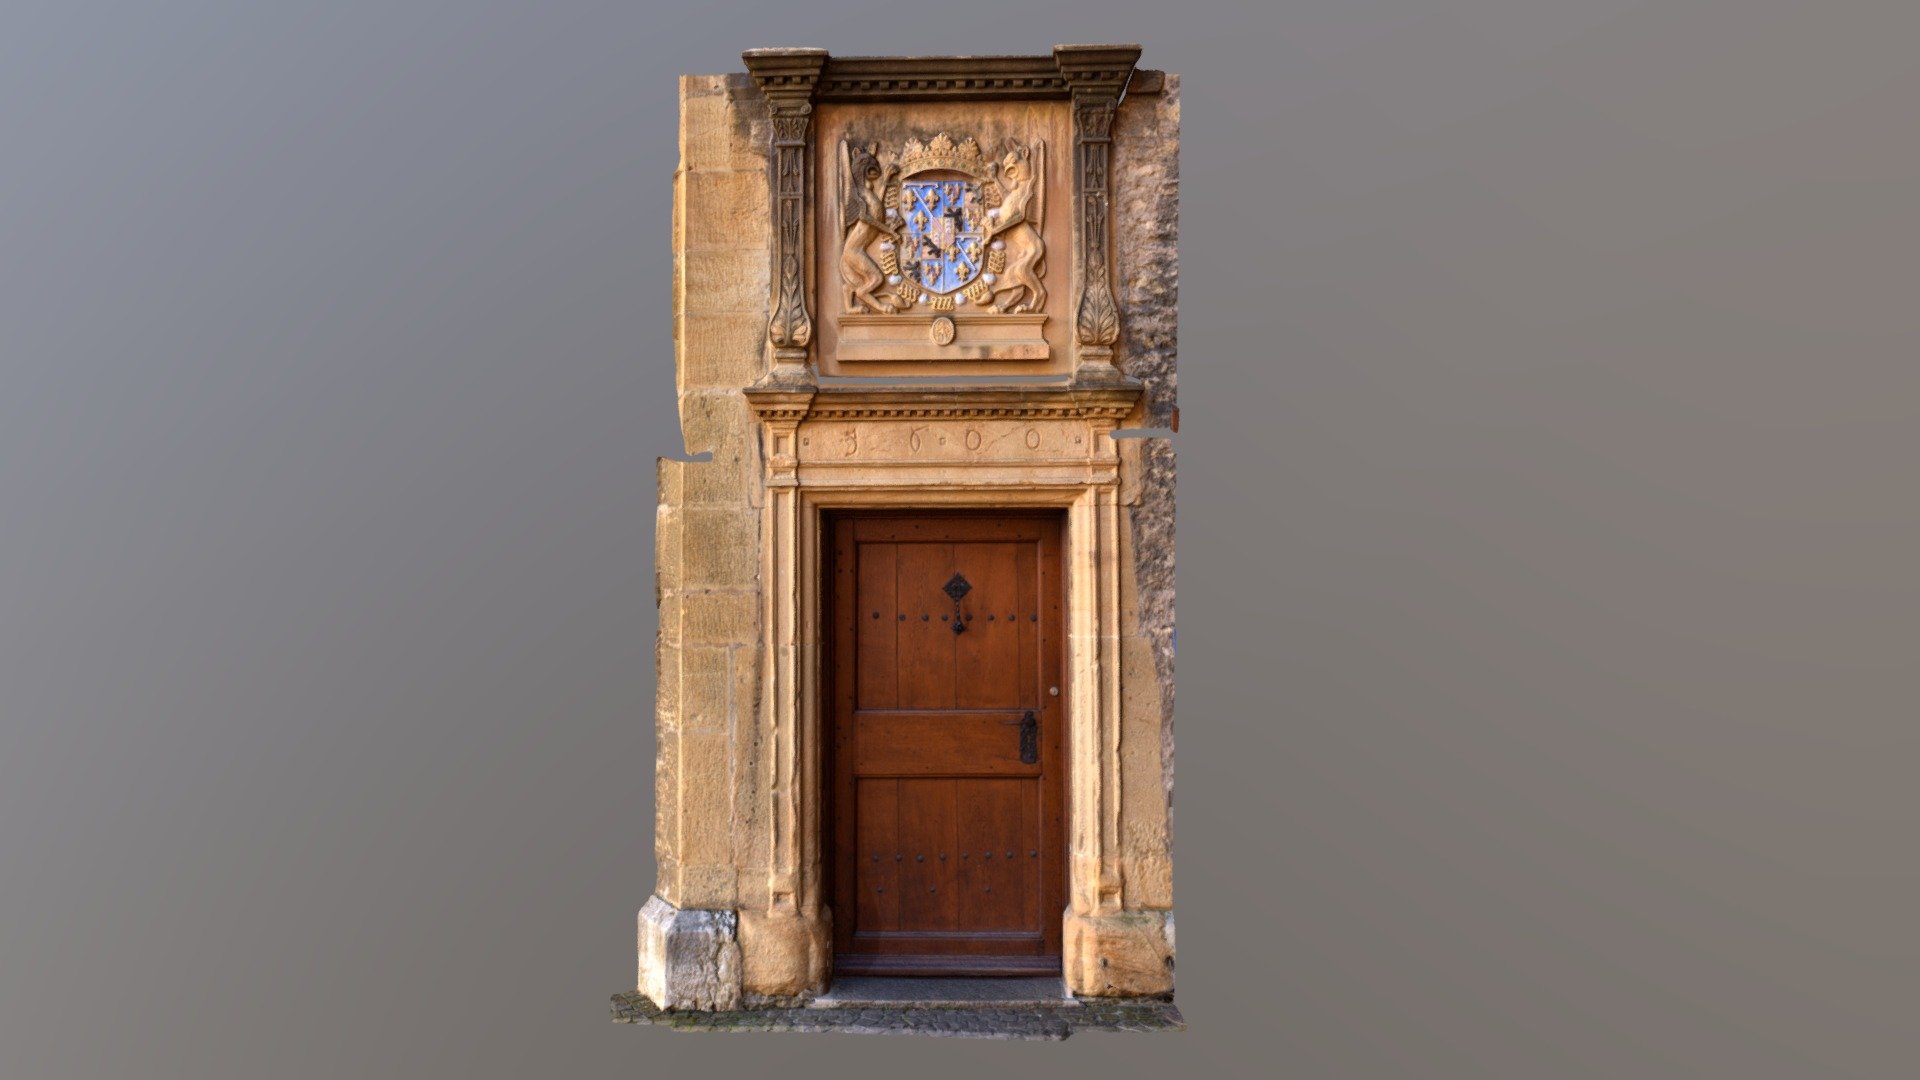 Castle door inside Neuchatel castle courtyard.